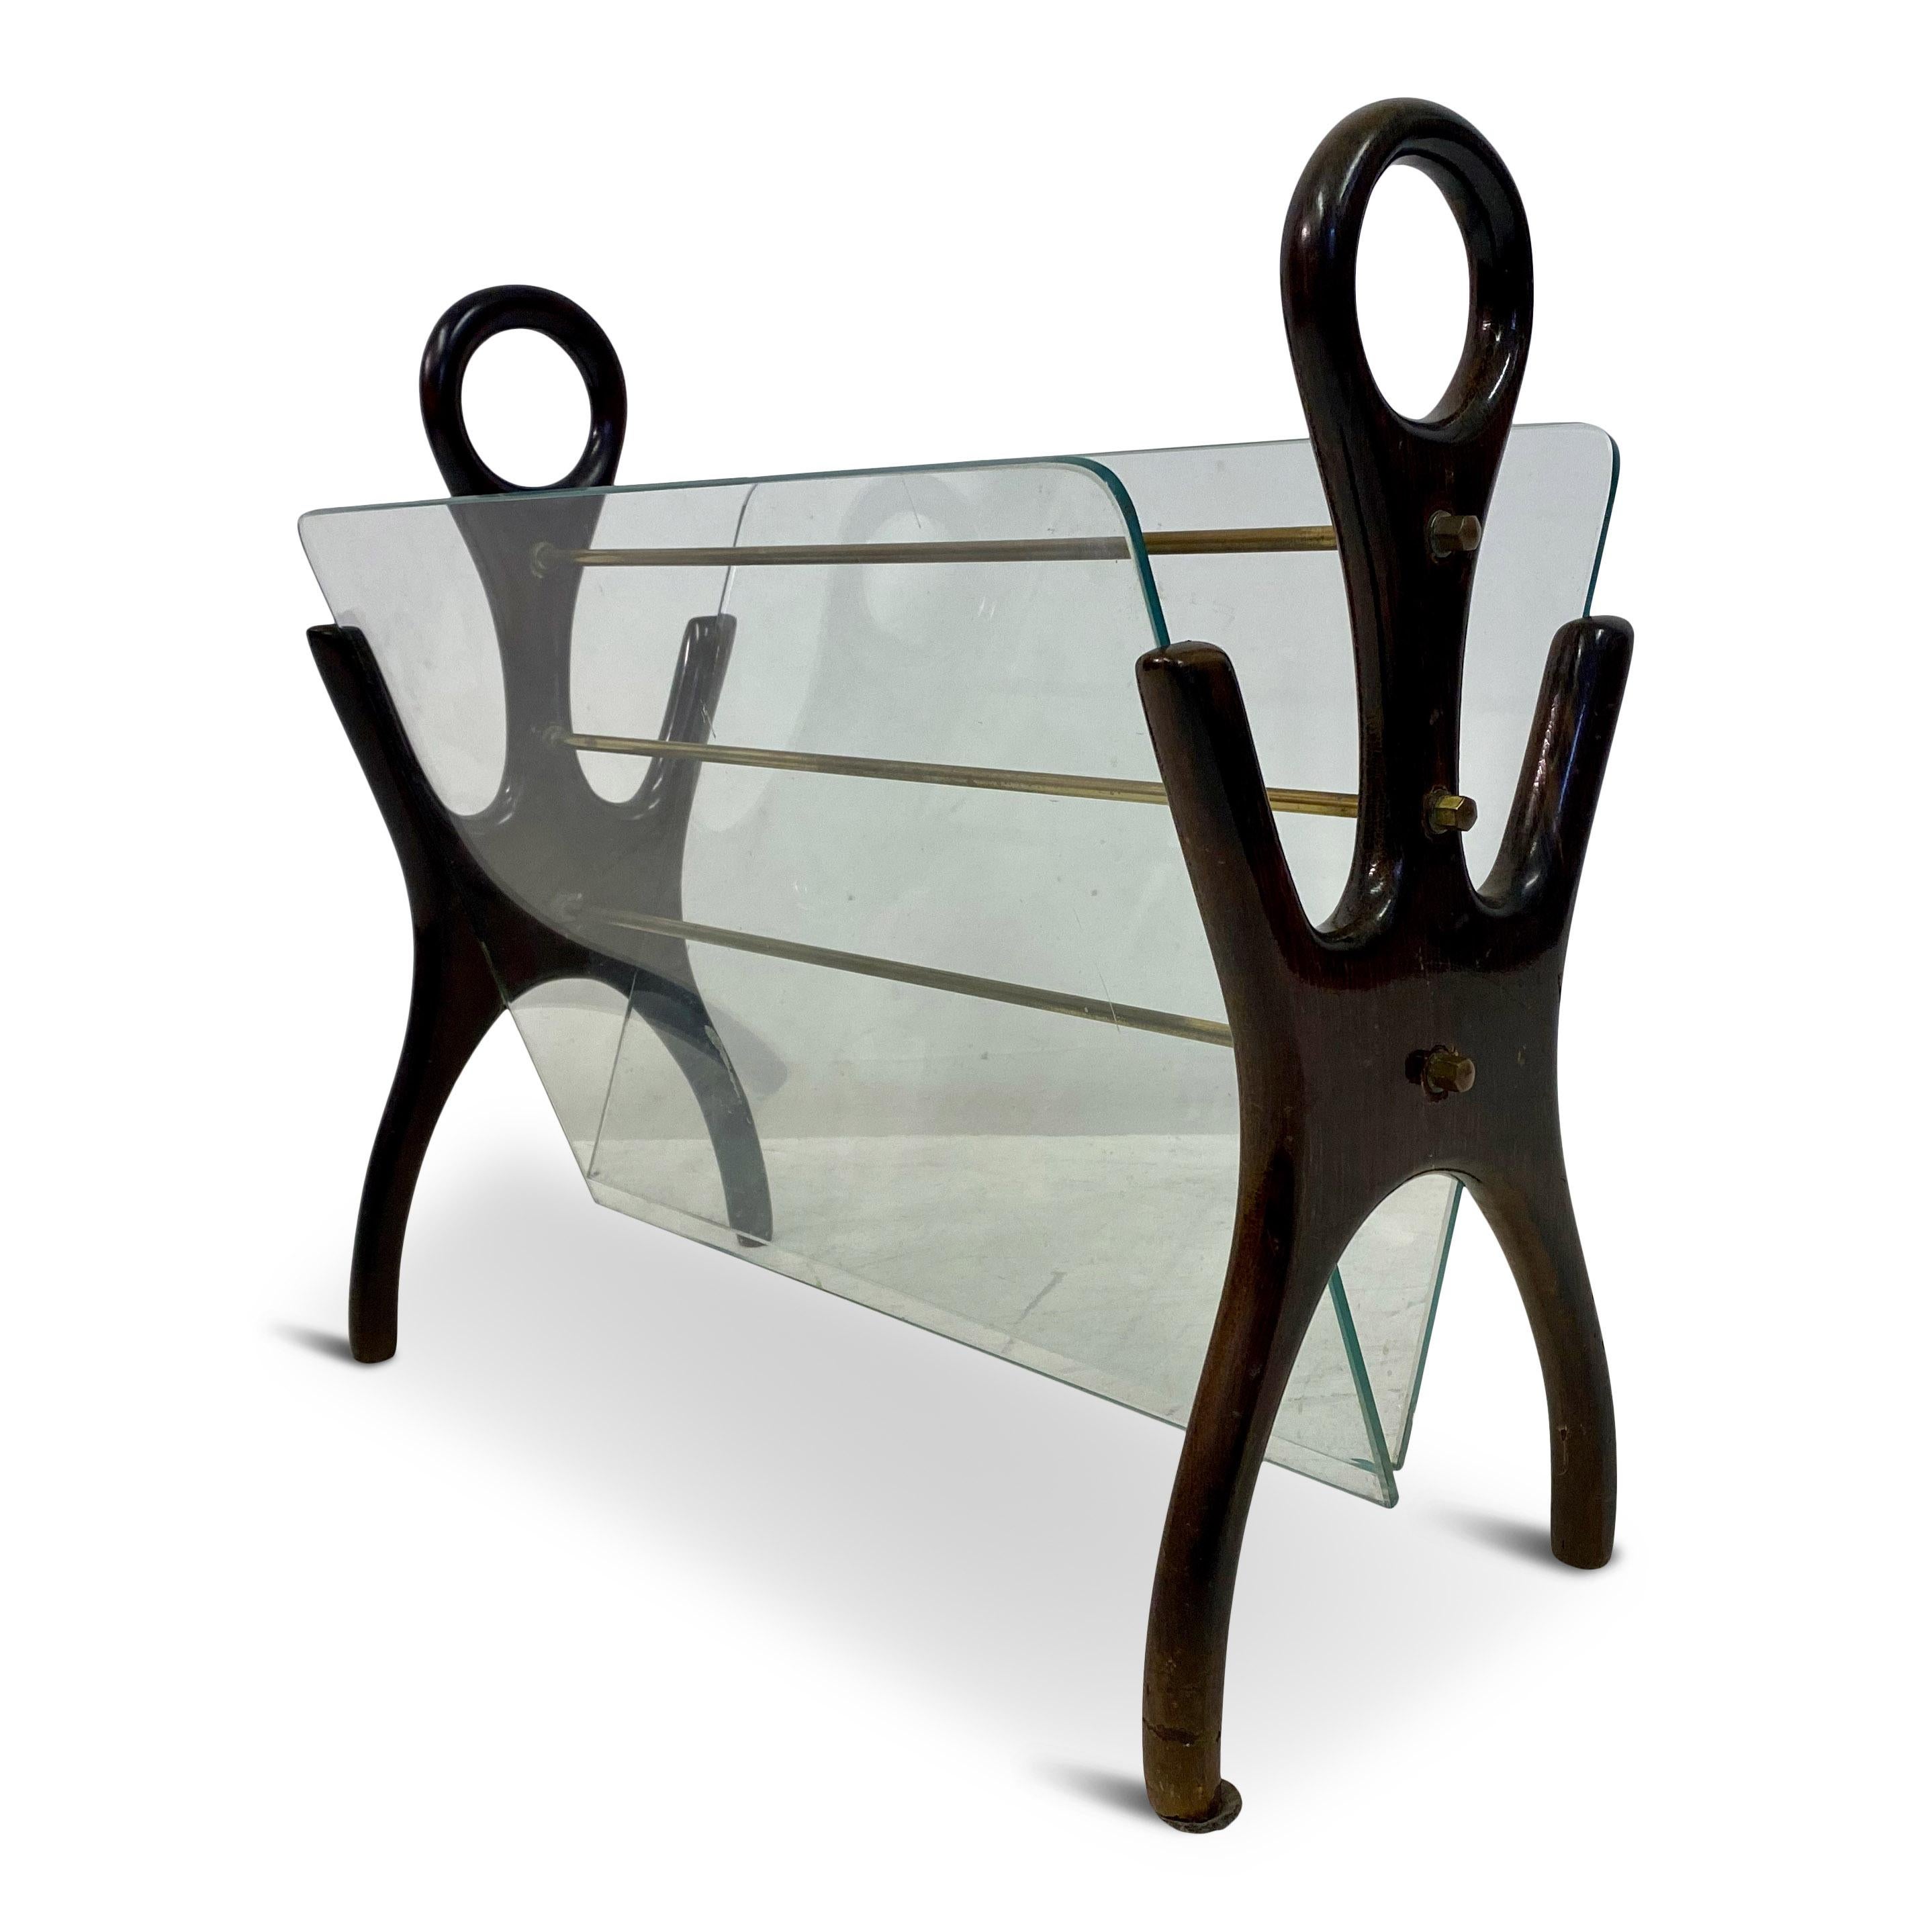 Magazine rack

Wooden frame

Glass shelves

Whimsical shape

Italy 1950s/1960s.